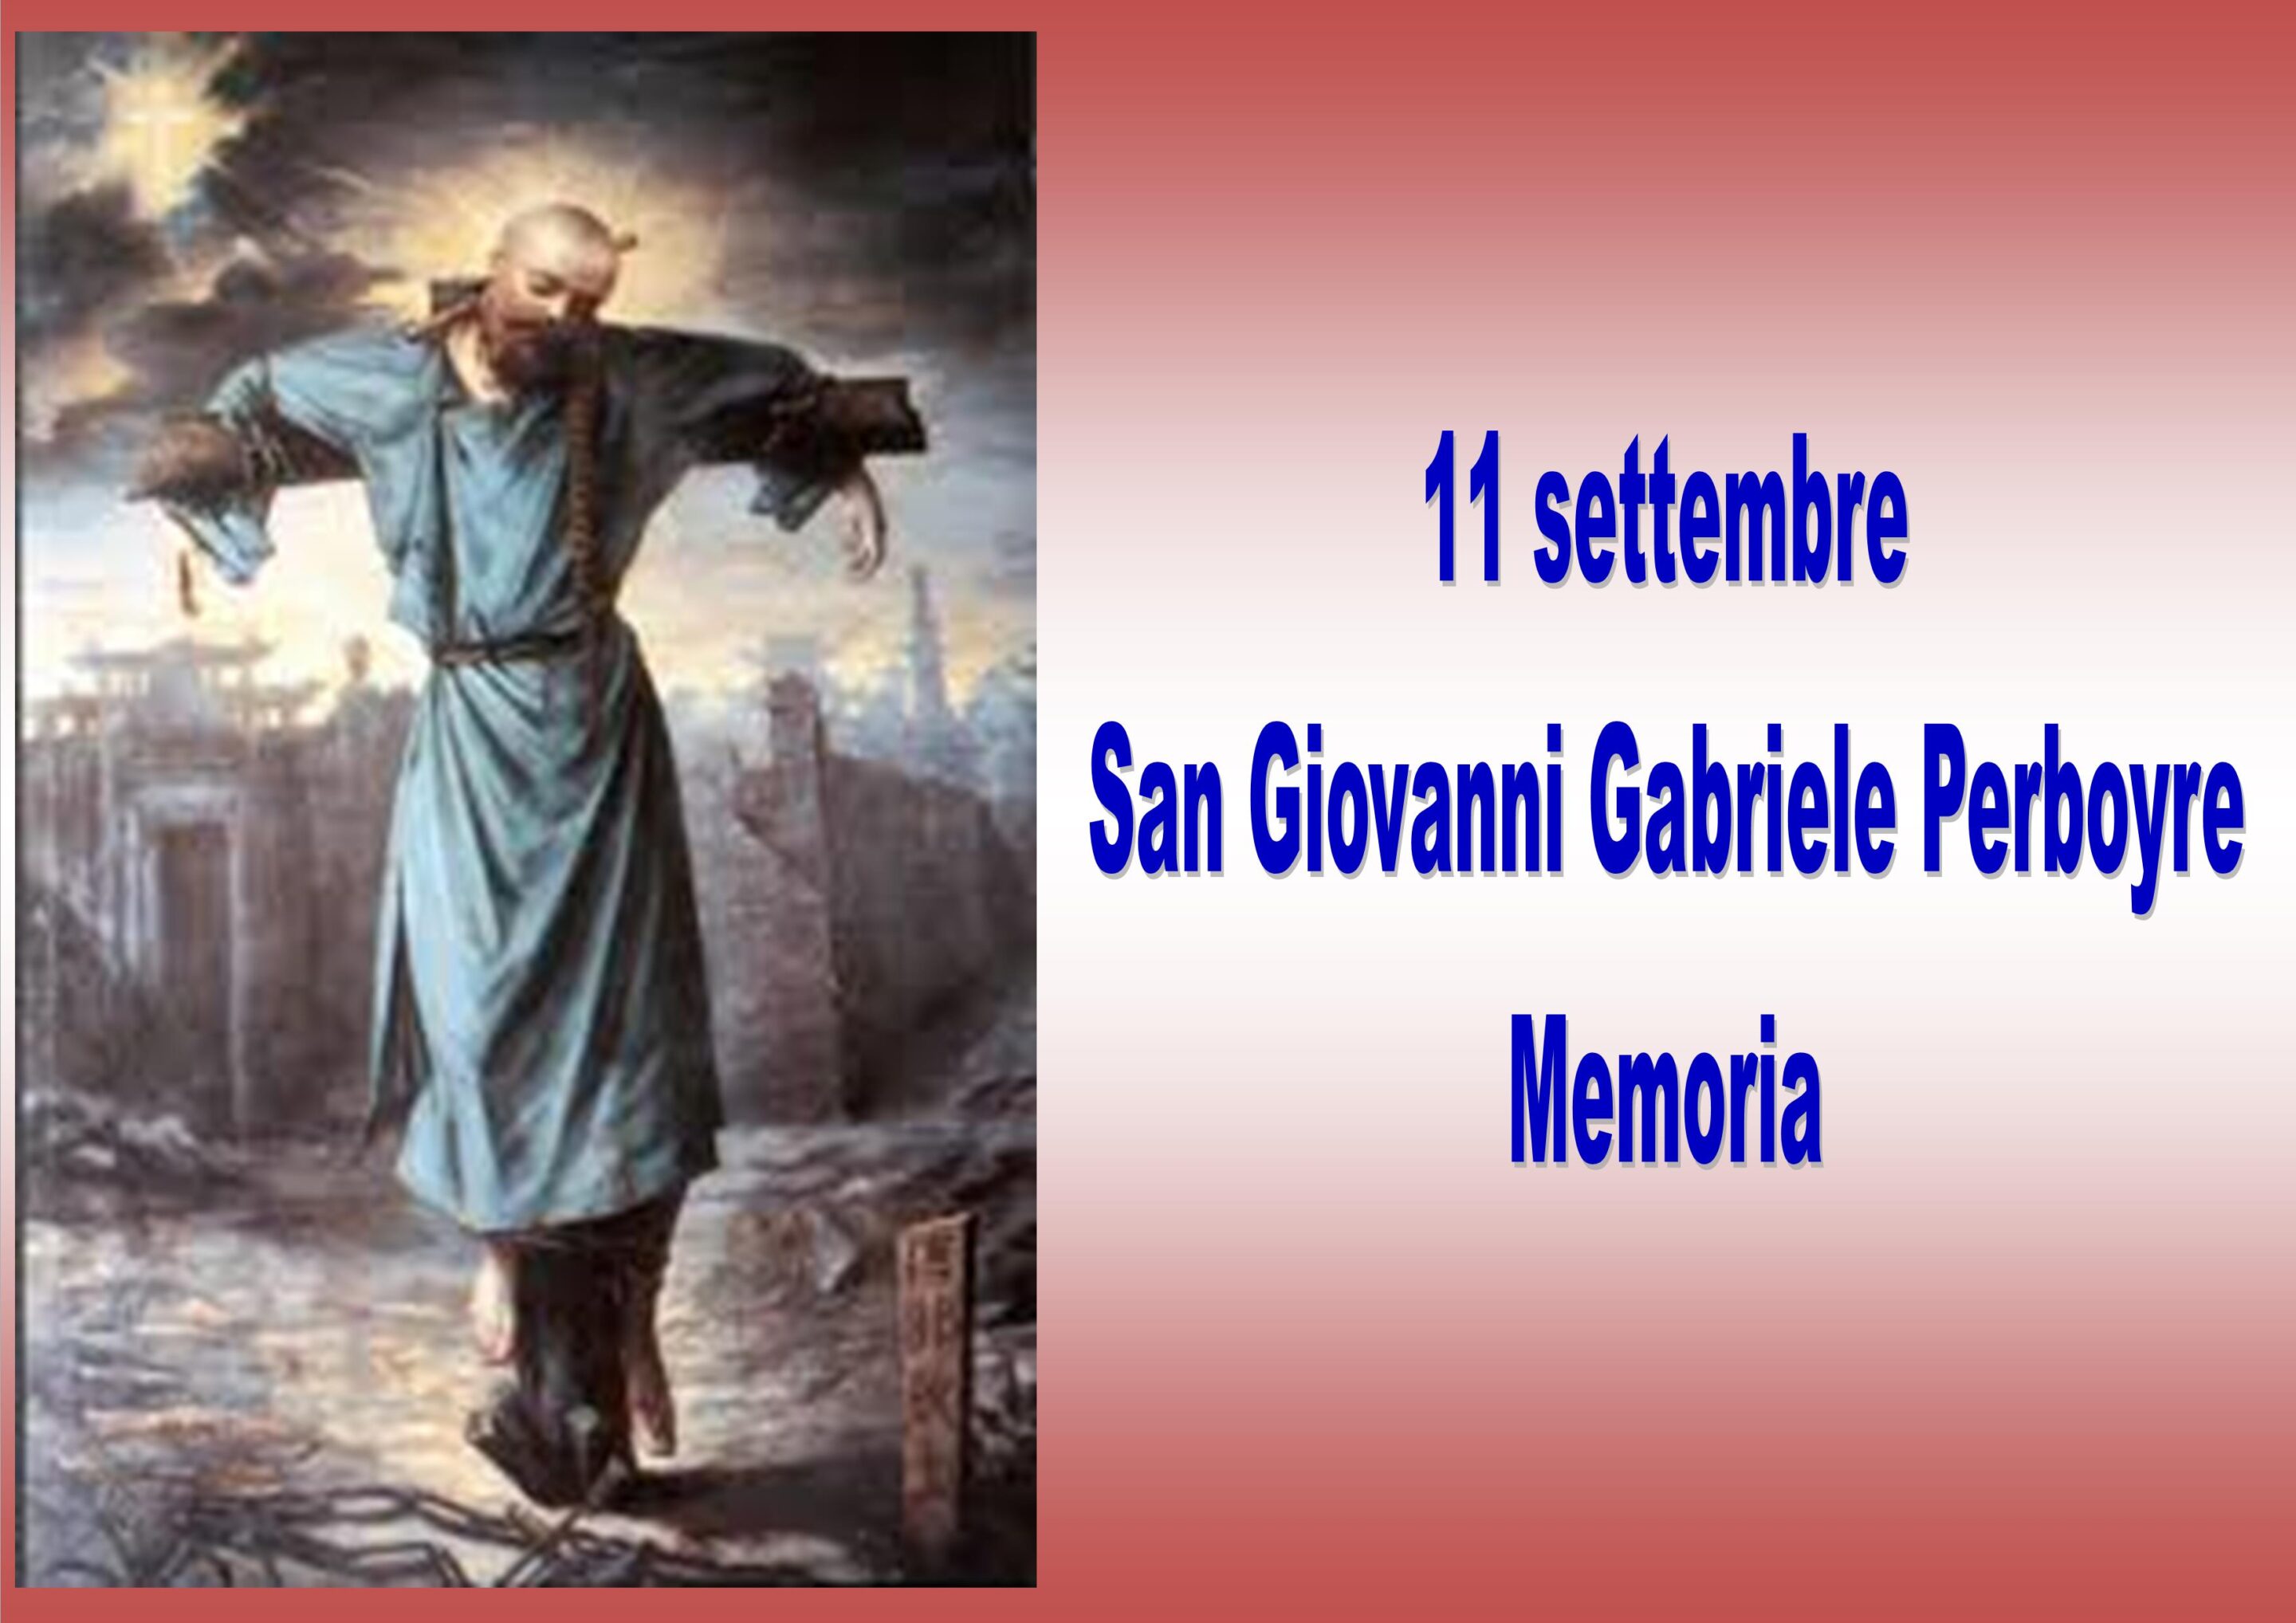 11 settembre: San Giovanni Gabriele Perboyre